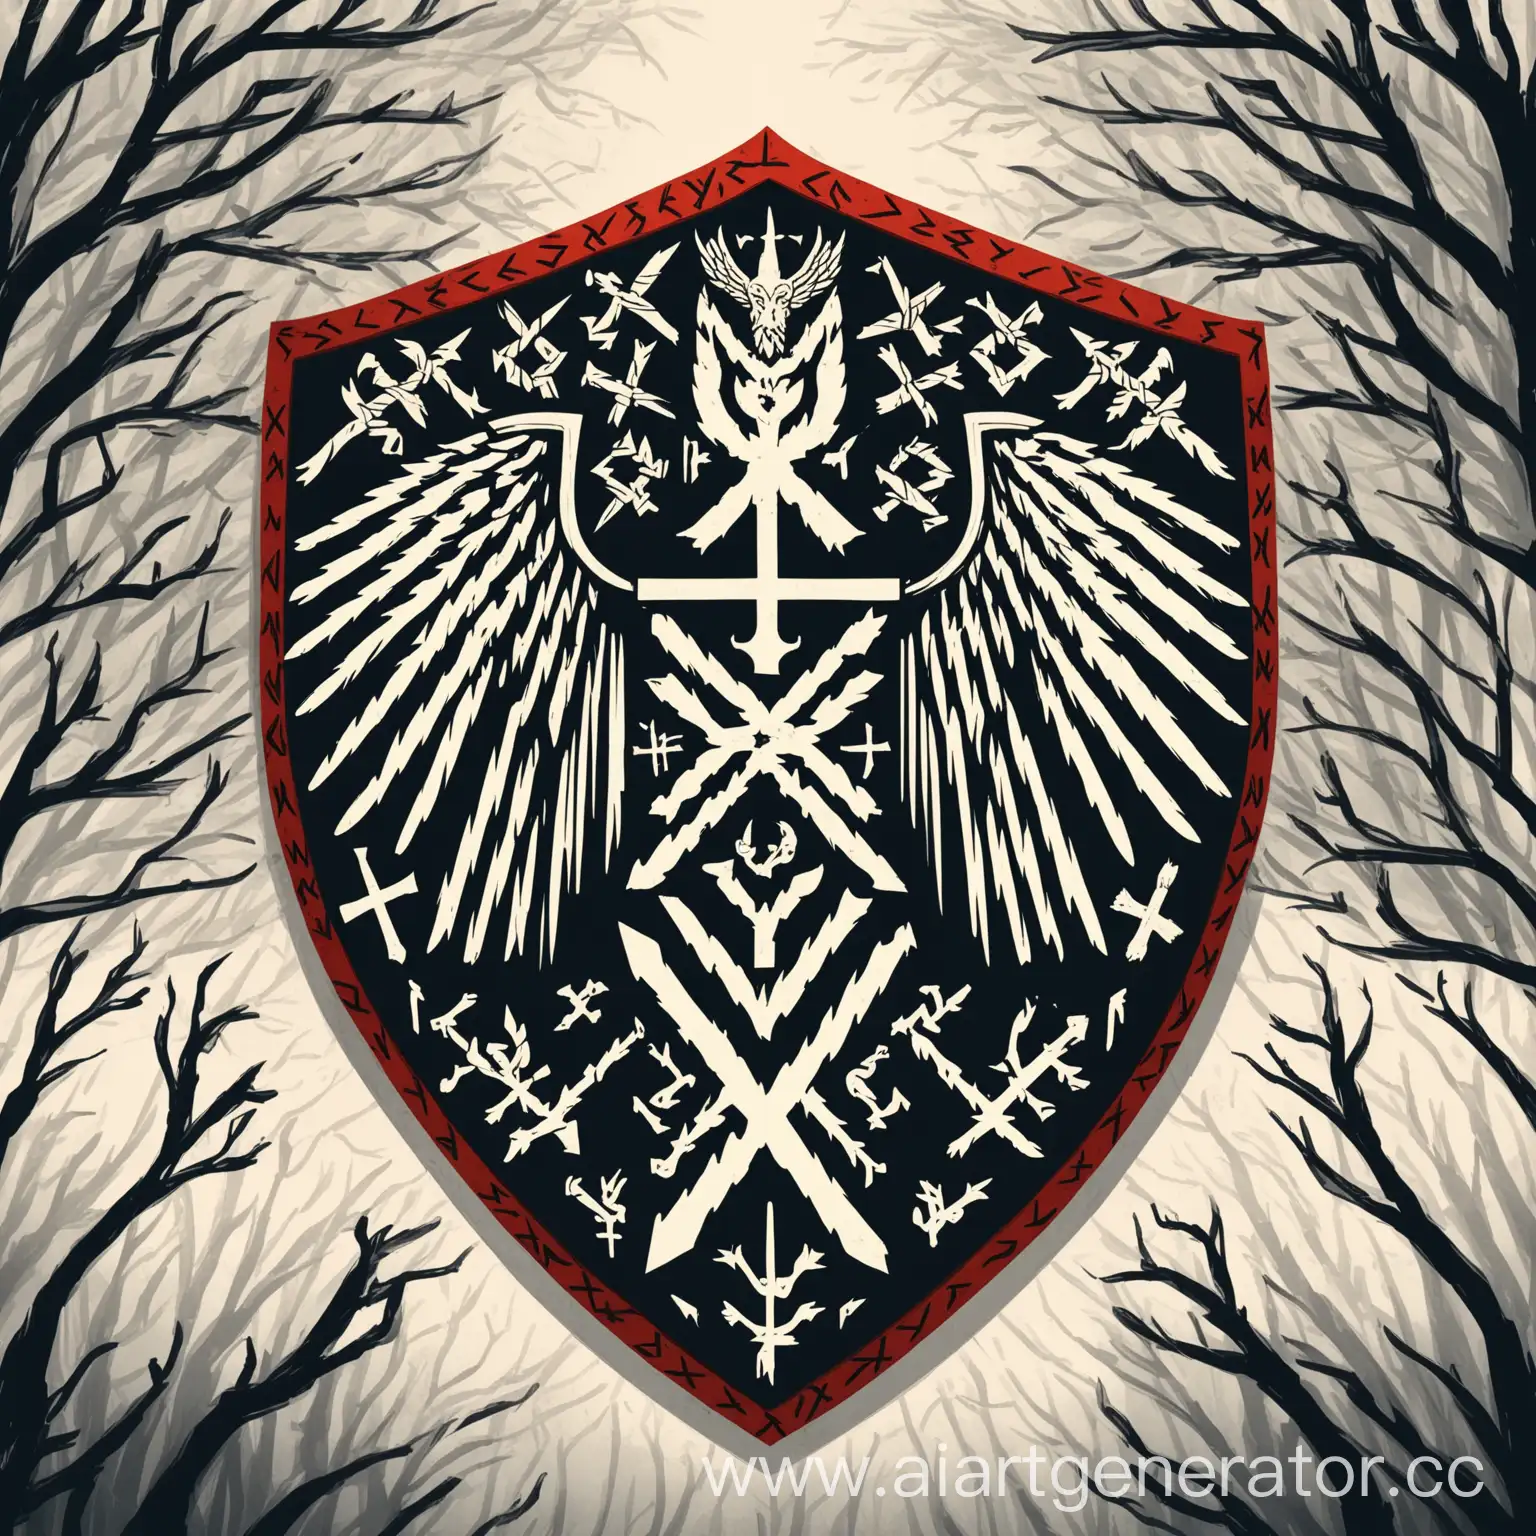 Герб славян на щите древо, крылья свободы, 
Славянские руны, стиль:минимализм